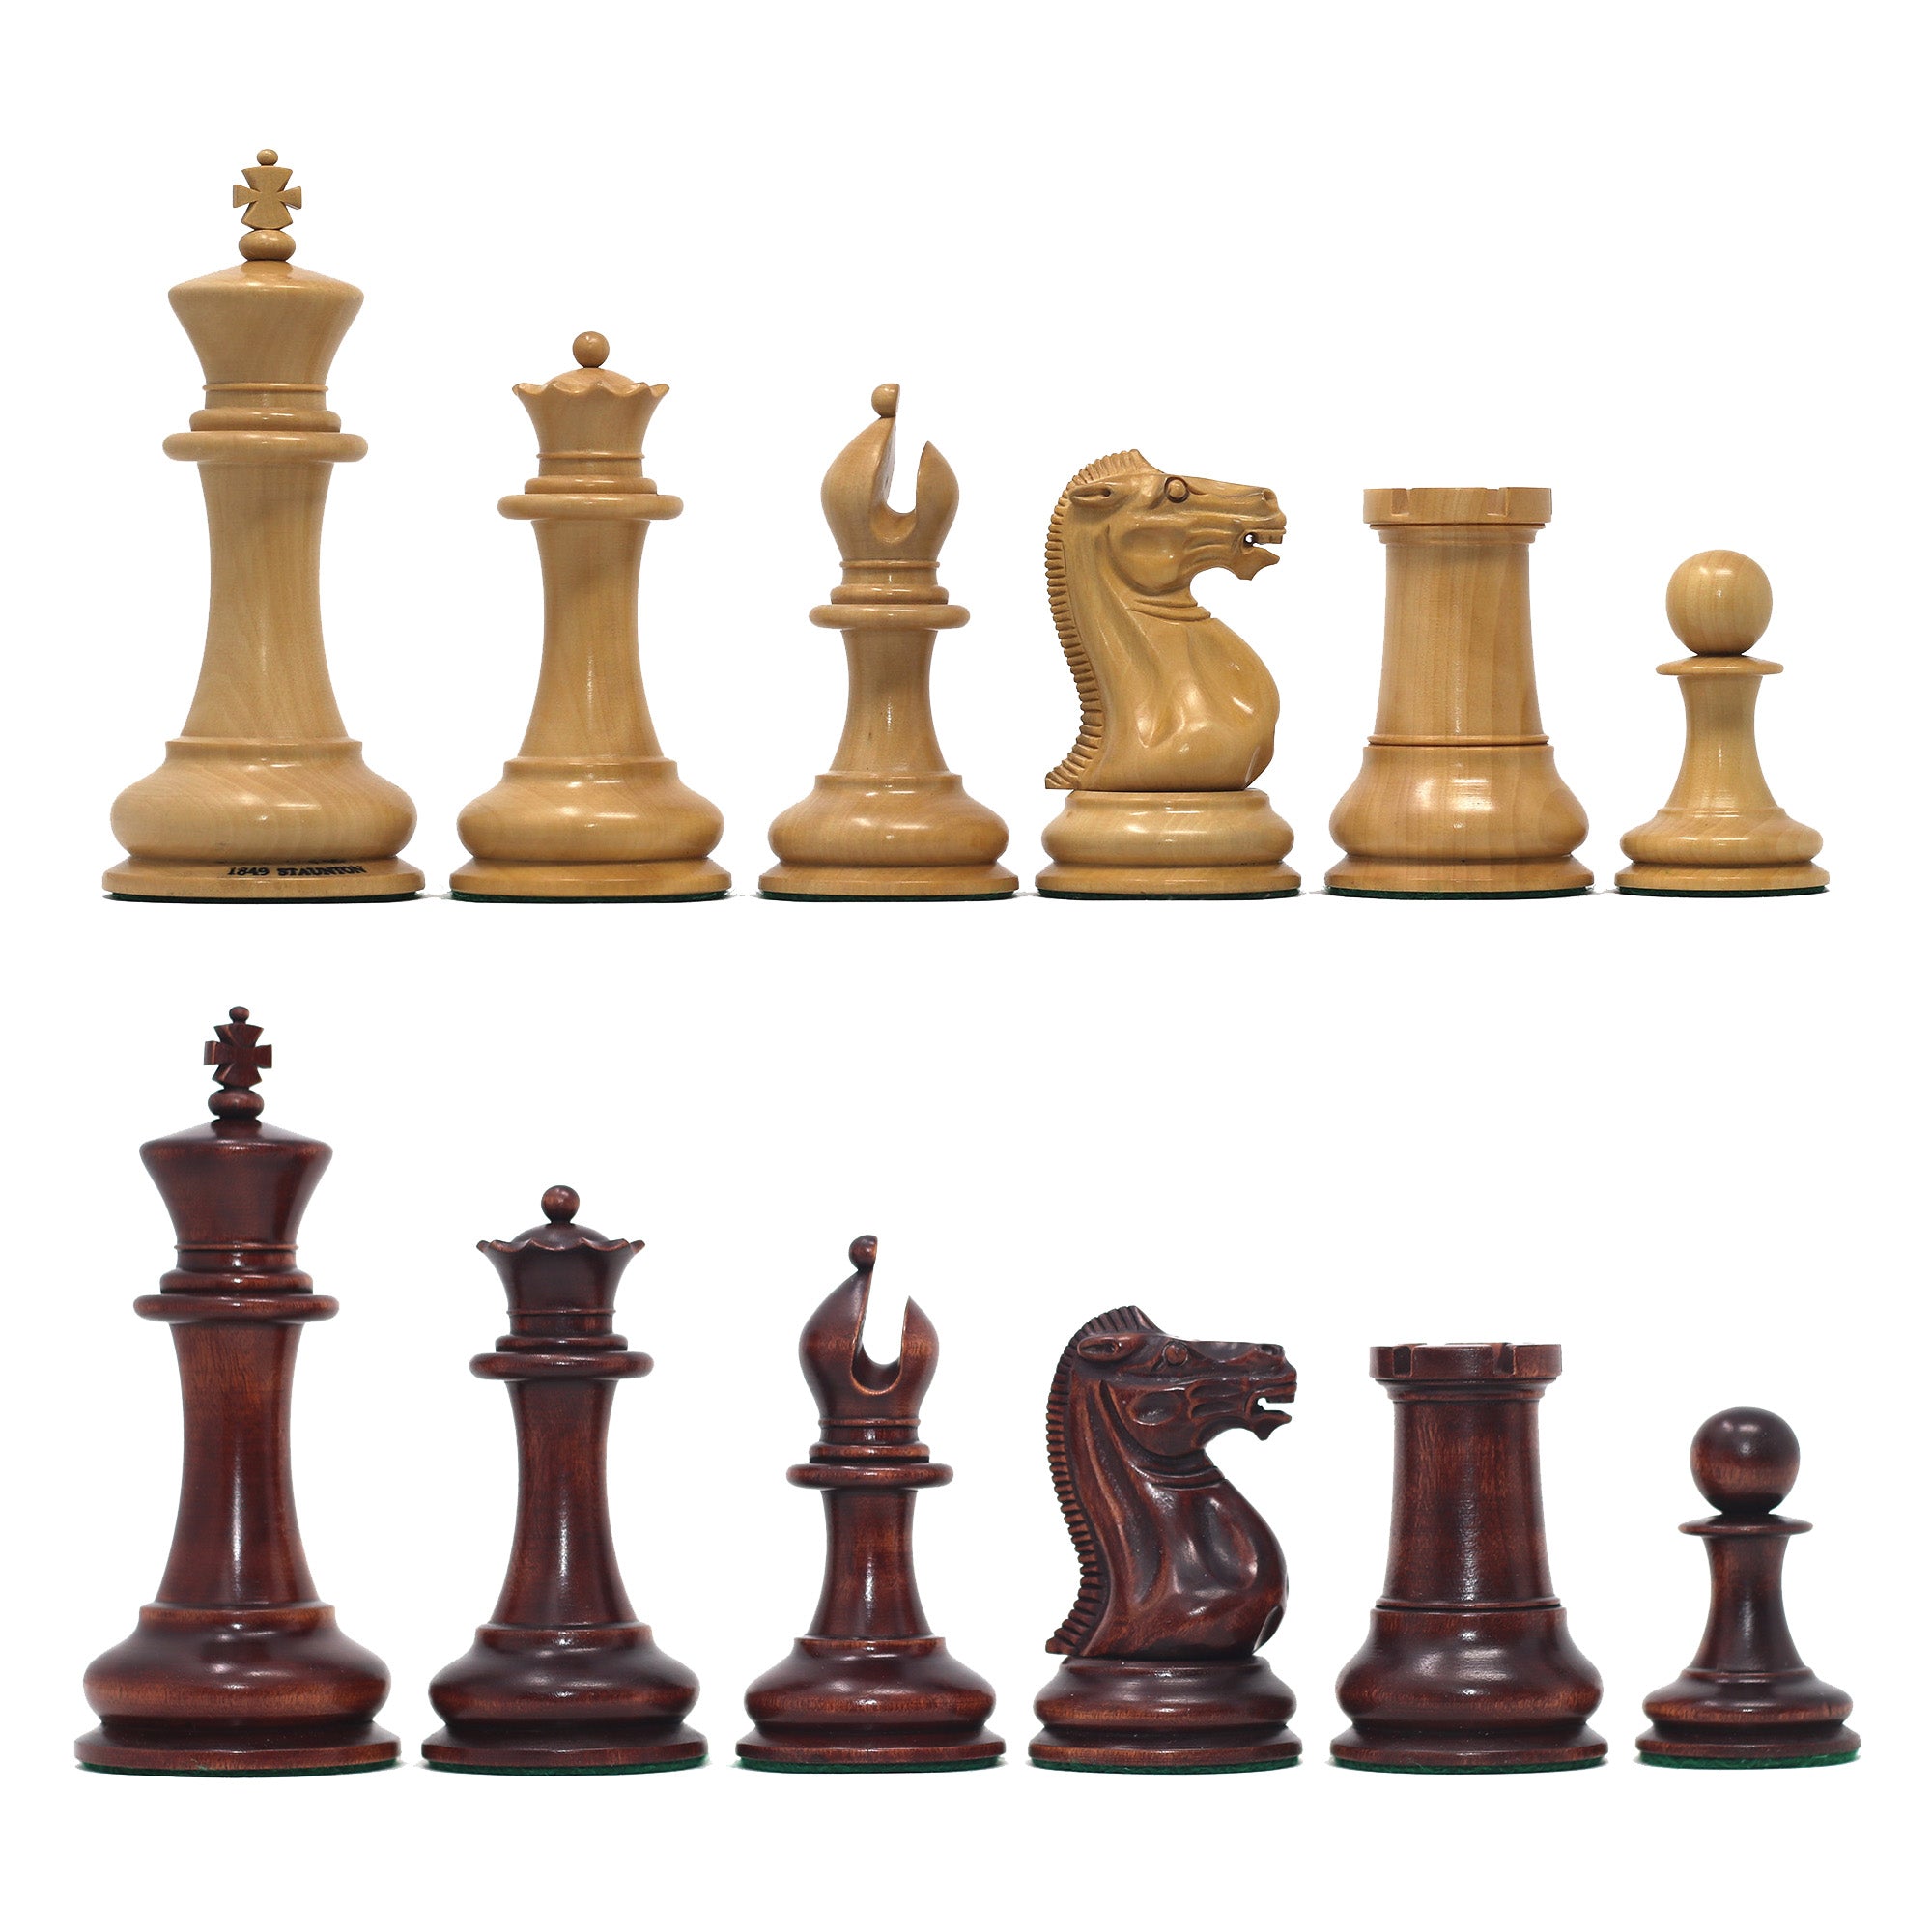 Nathaniel 1849 Reproduction Vintage 4.4" Chess Pieces Natural/Mahogany